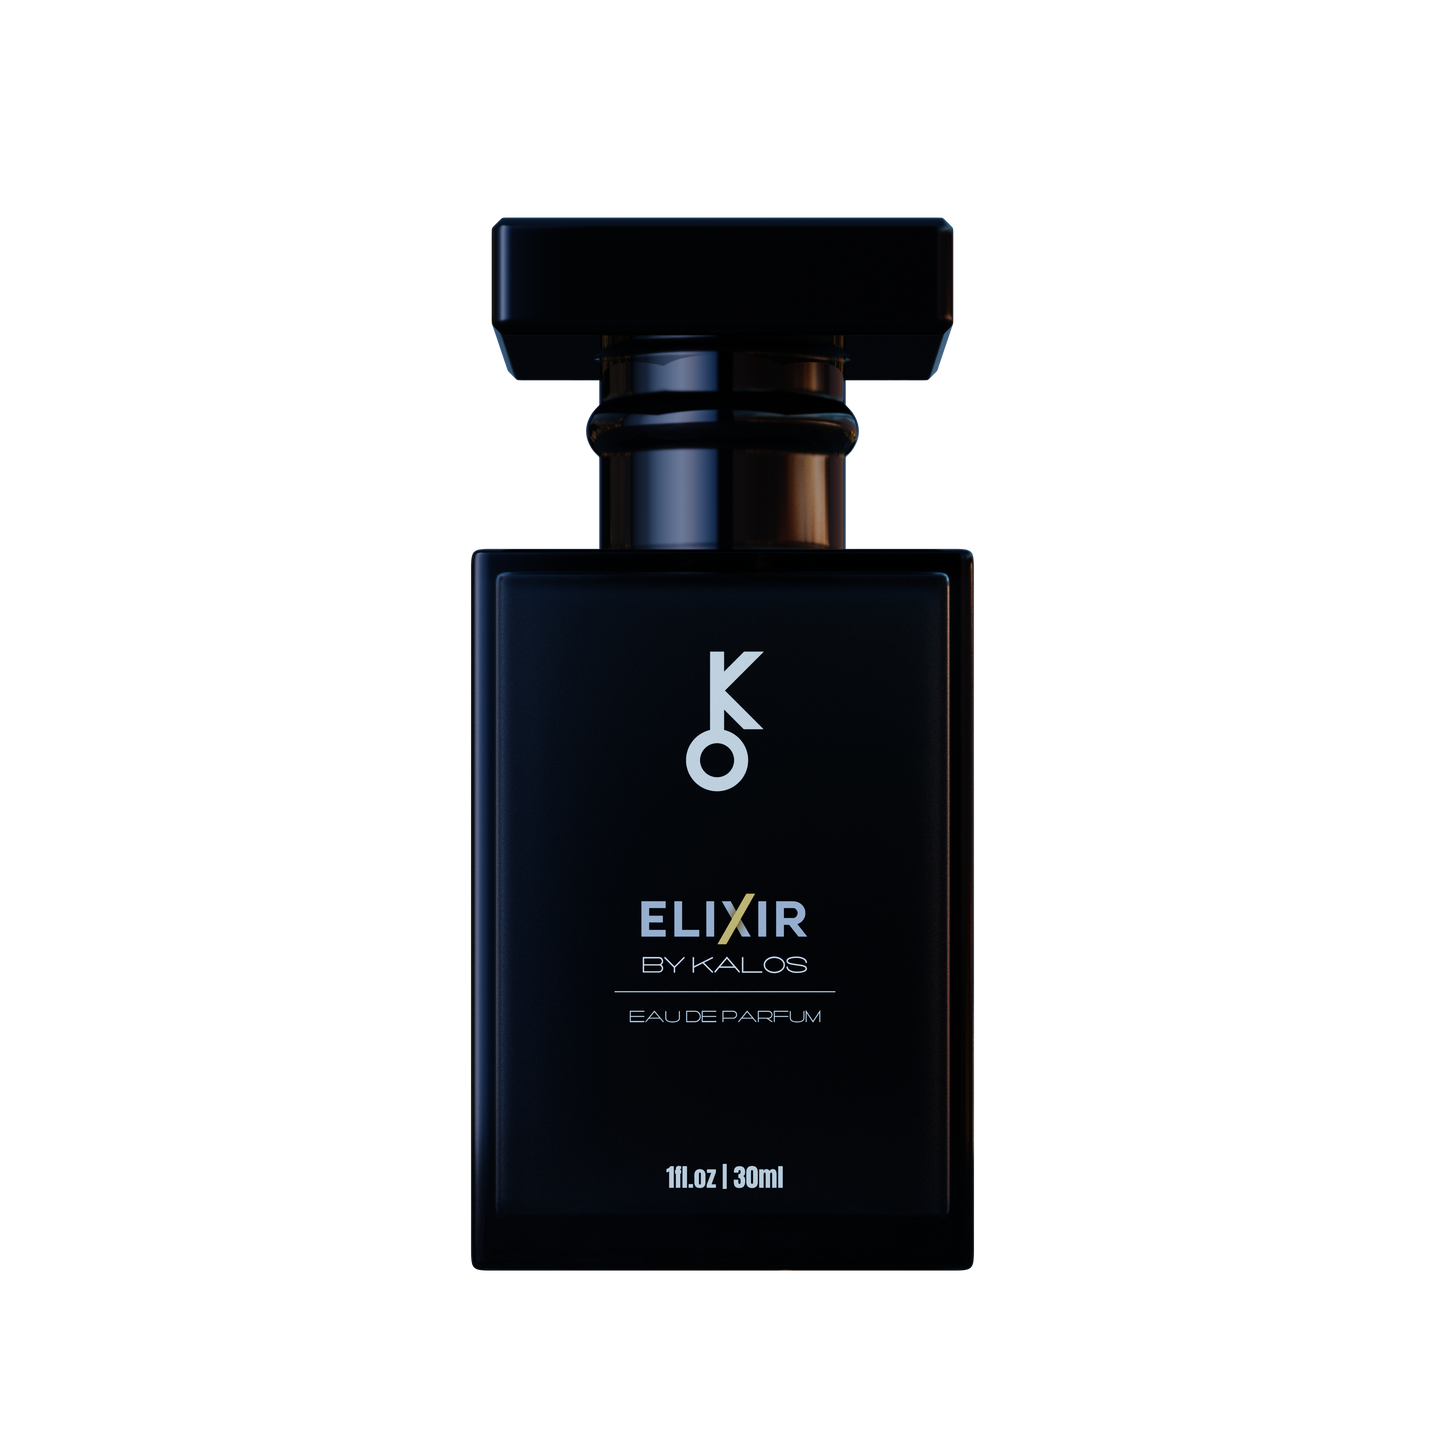 Elixir